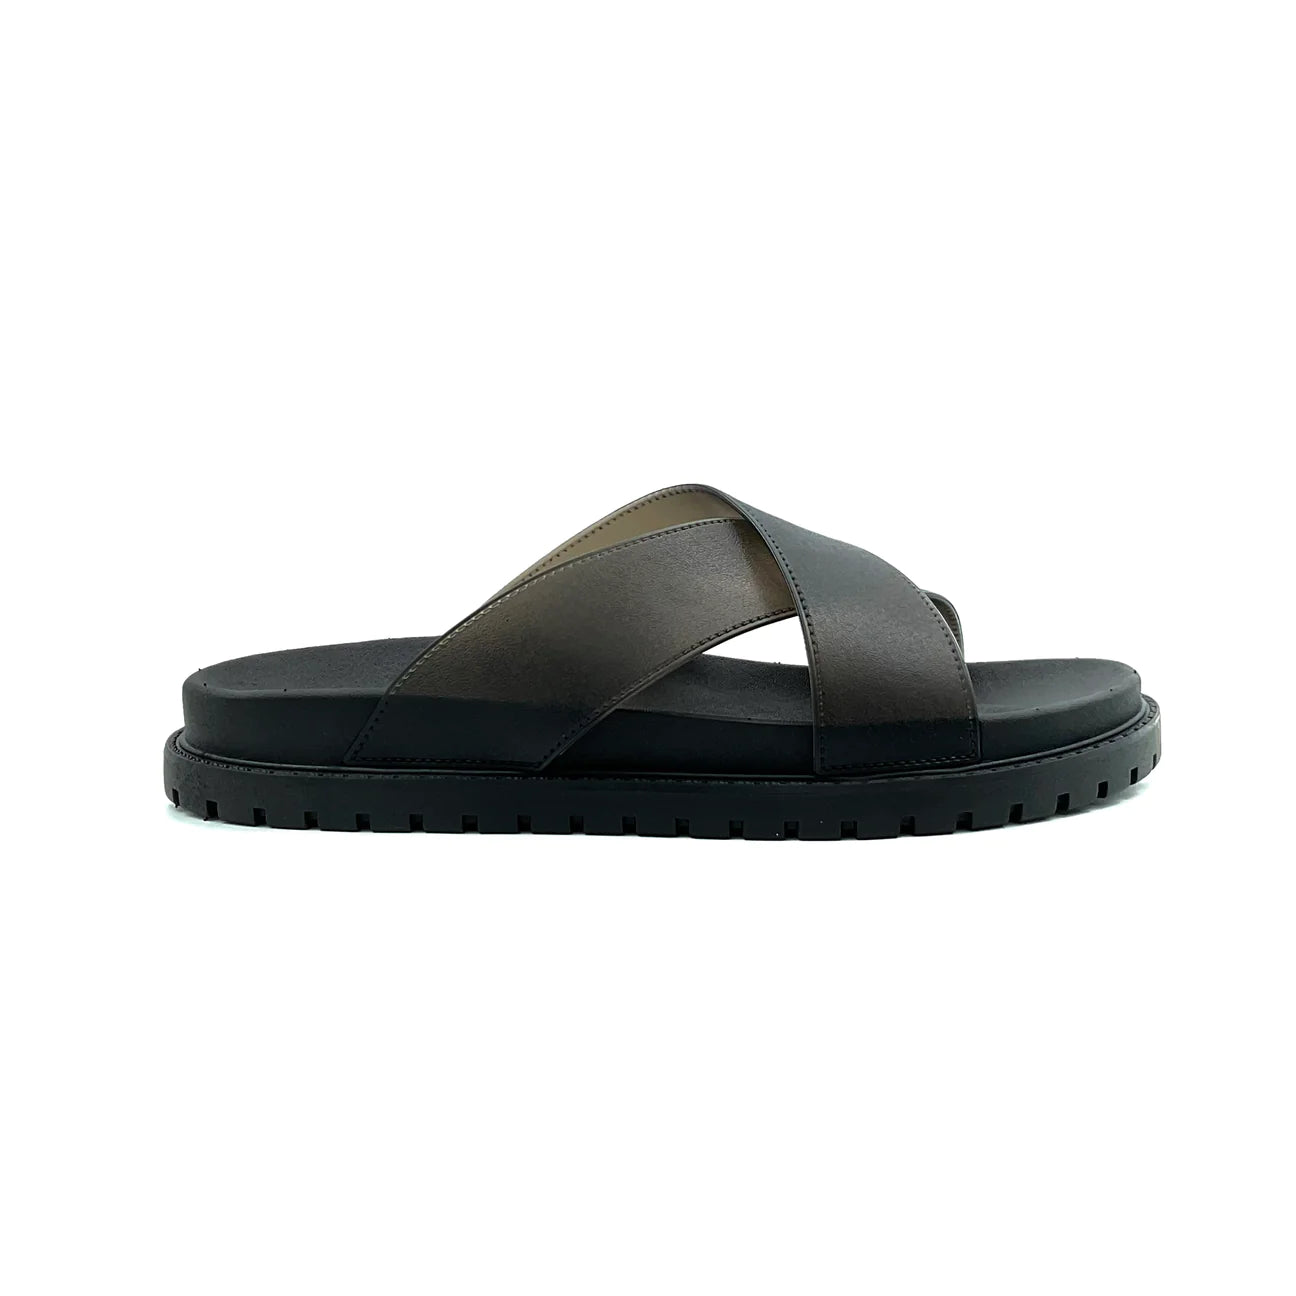 Riosa Cross Slide Sandalet - Erkek